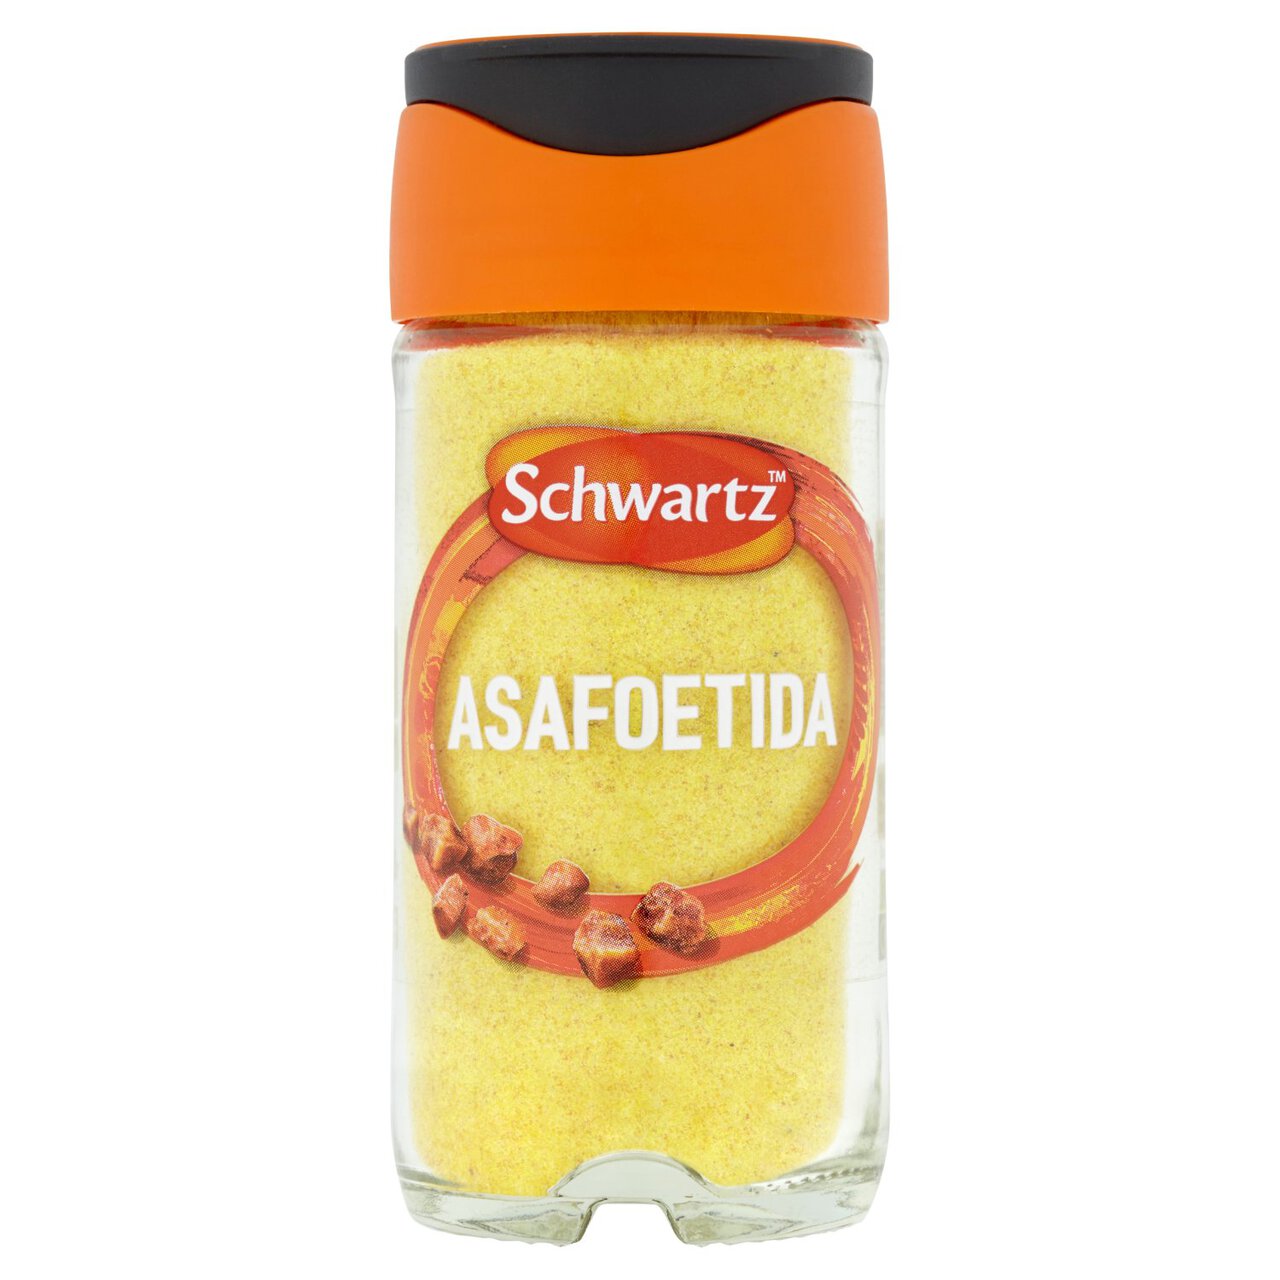 Schwartz Asafoetida Jar 52g